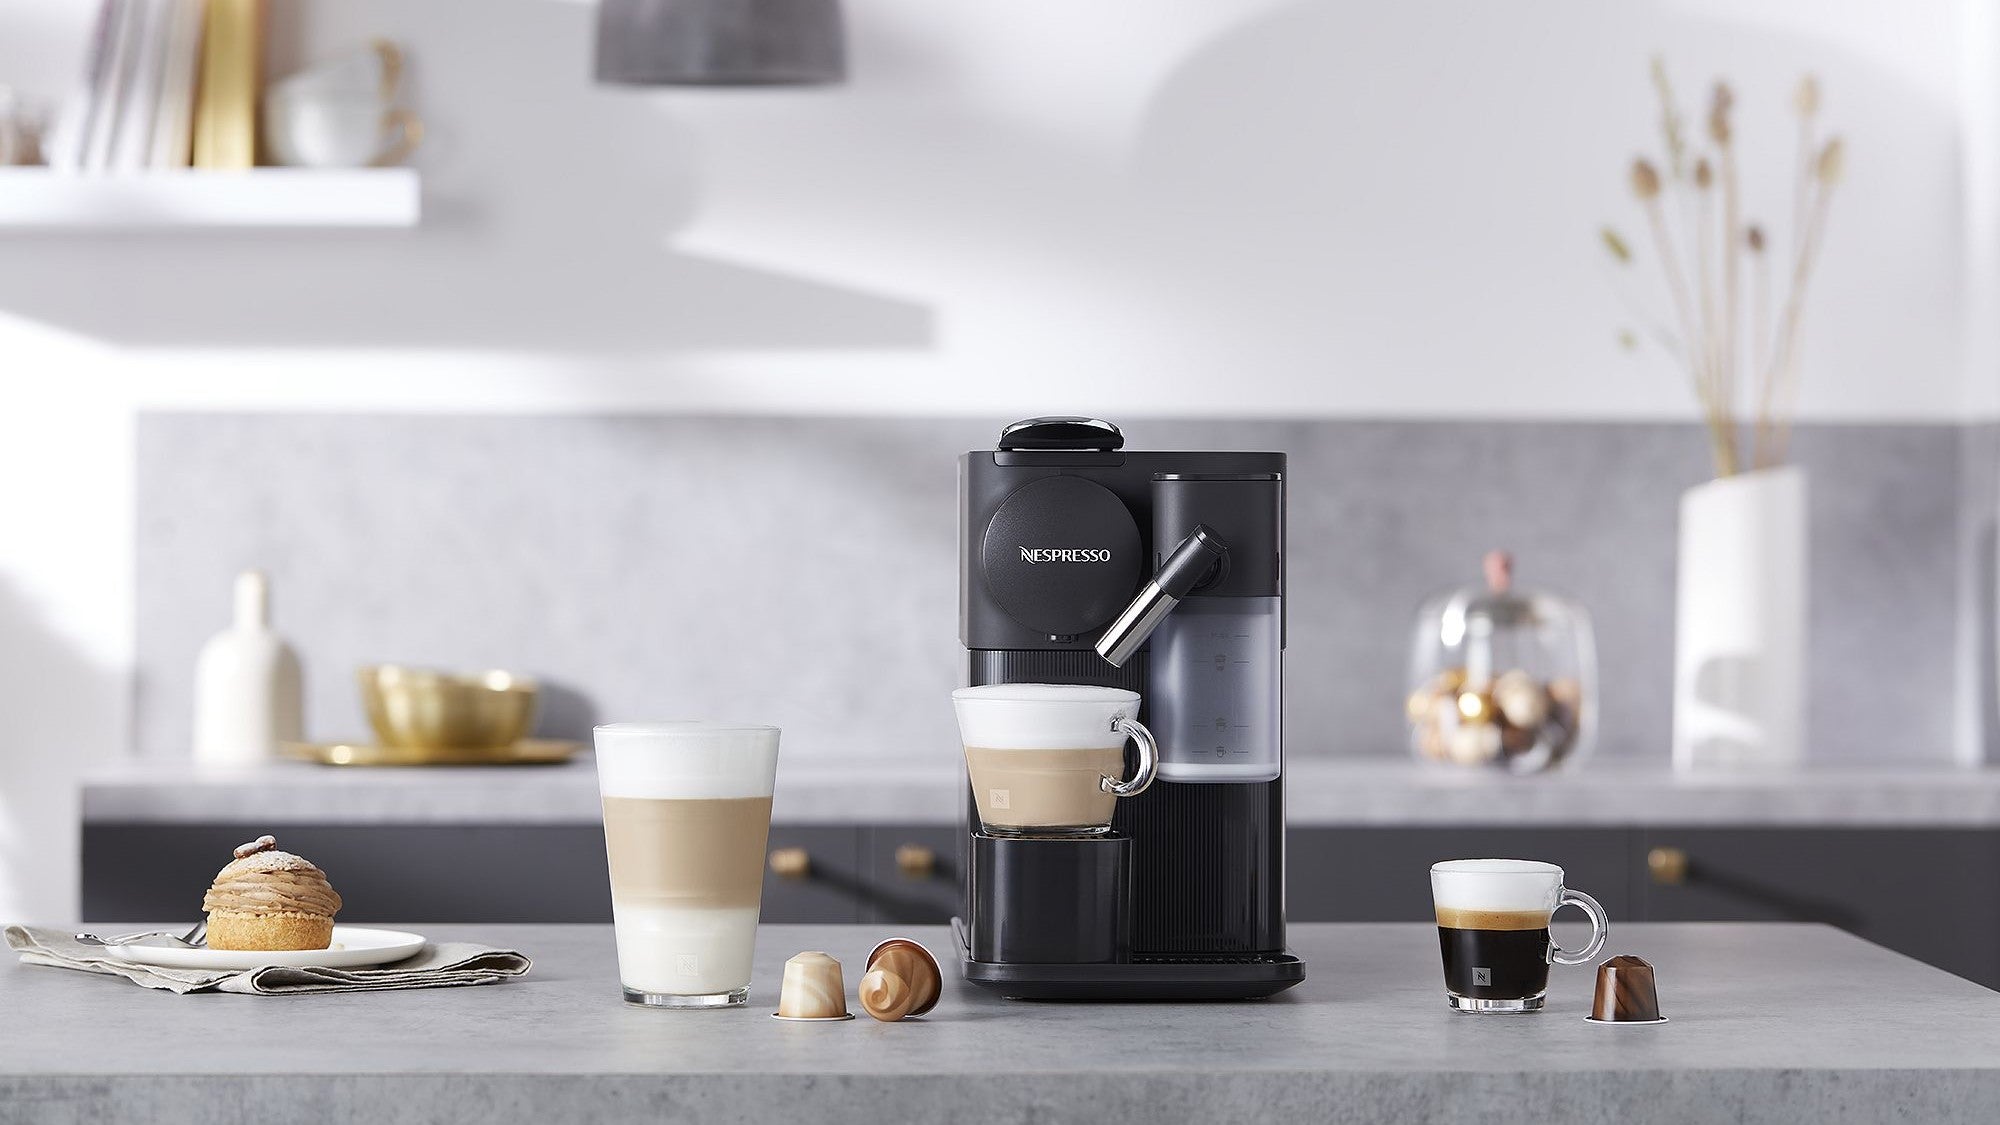 10 Compatible Nespresso coffee capsules